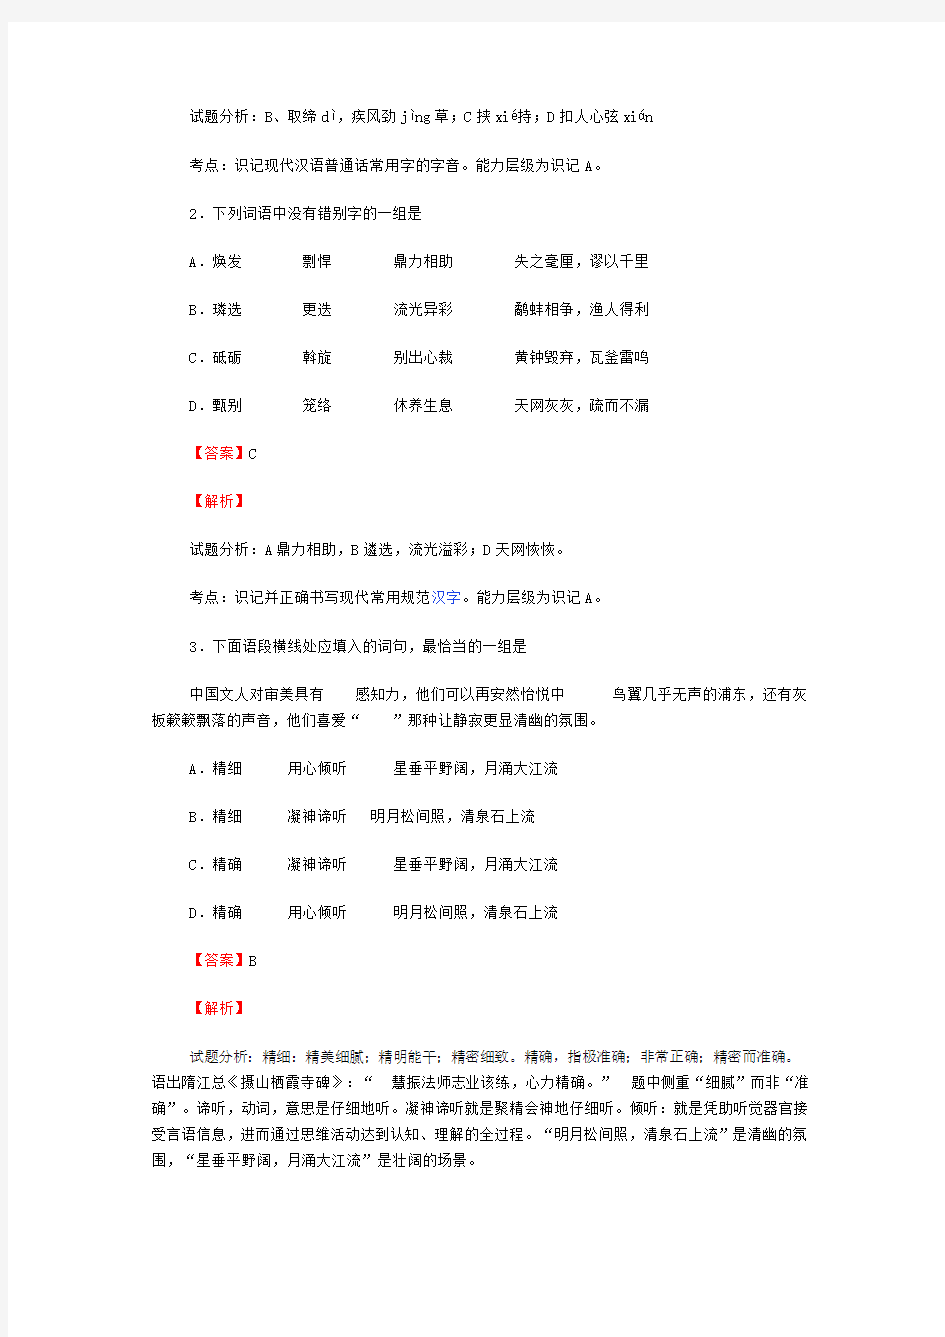 2014年天津高考语文试卷逐题解析及答案